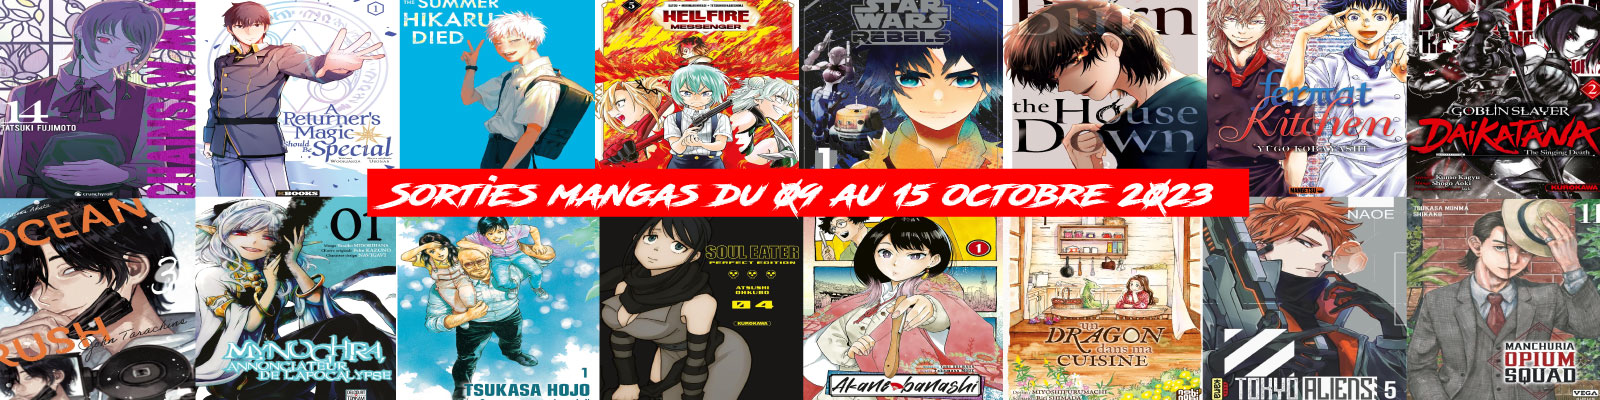 Sorties mangas-du-09-au-15-octobre-2023-2